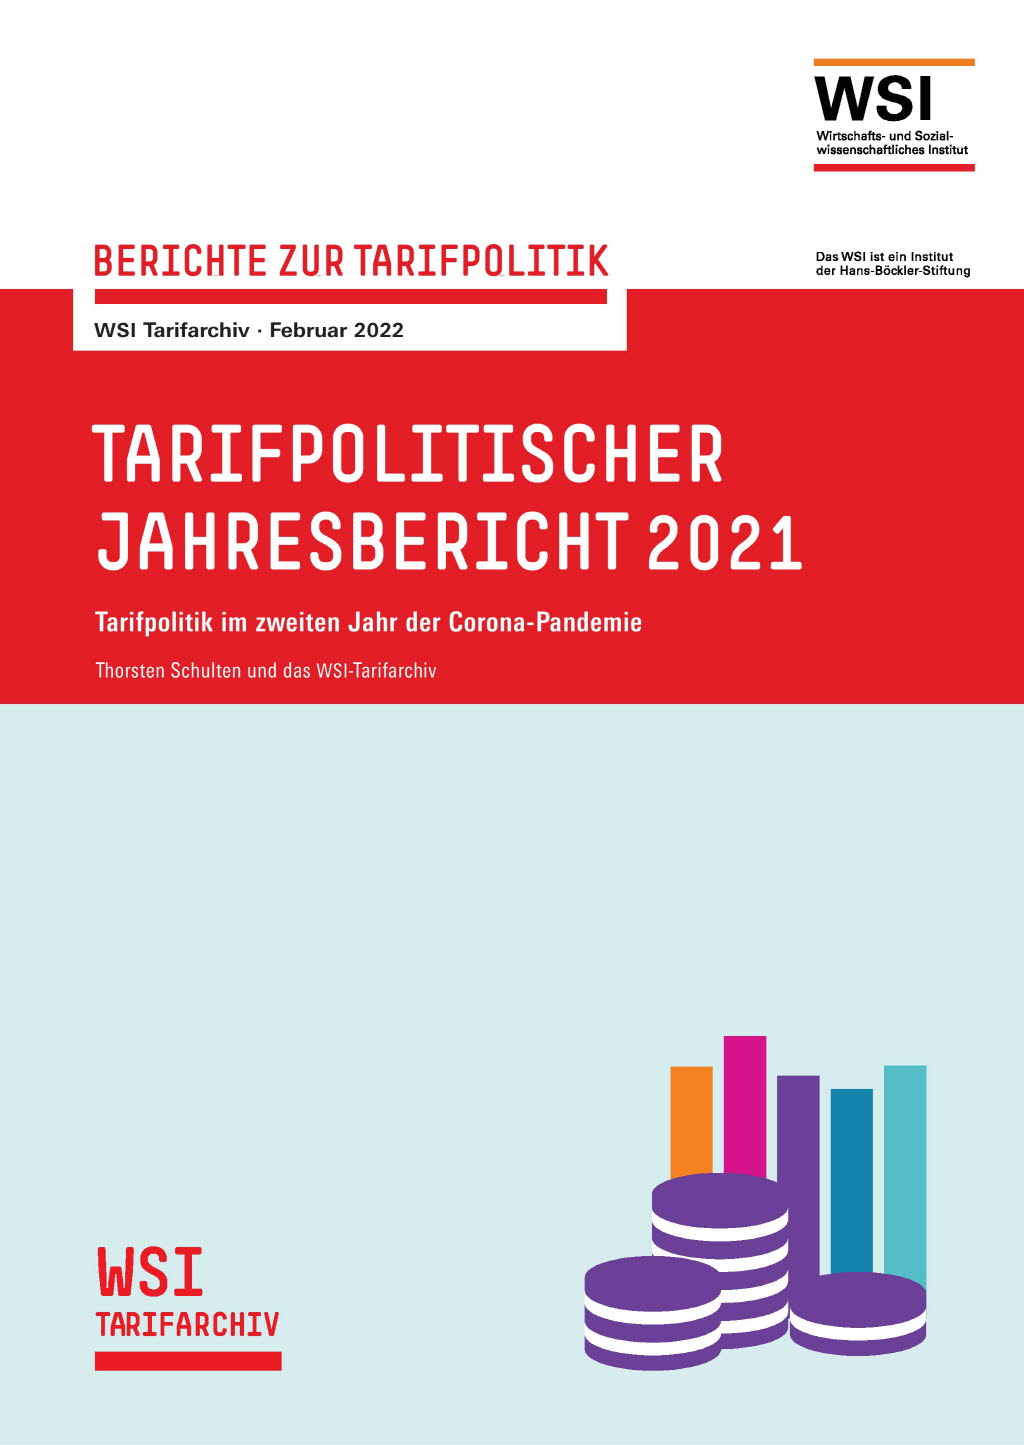 Tarifpolitischer Jahresbericht 2021